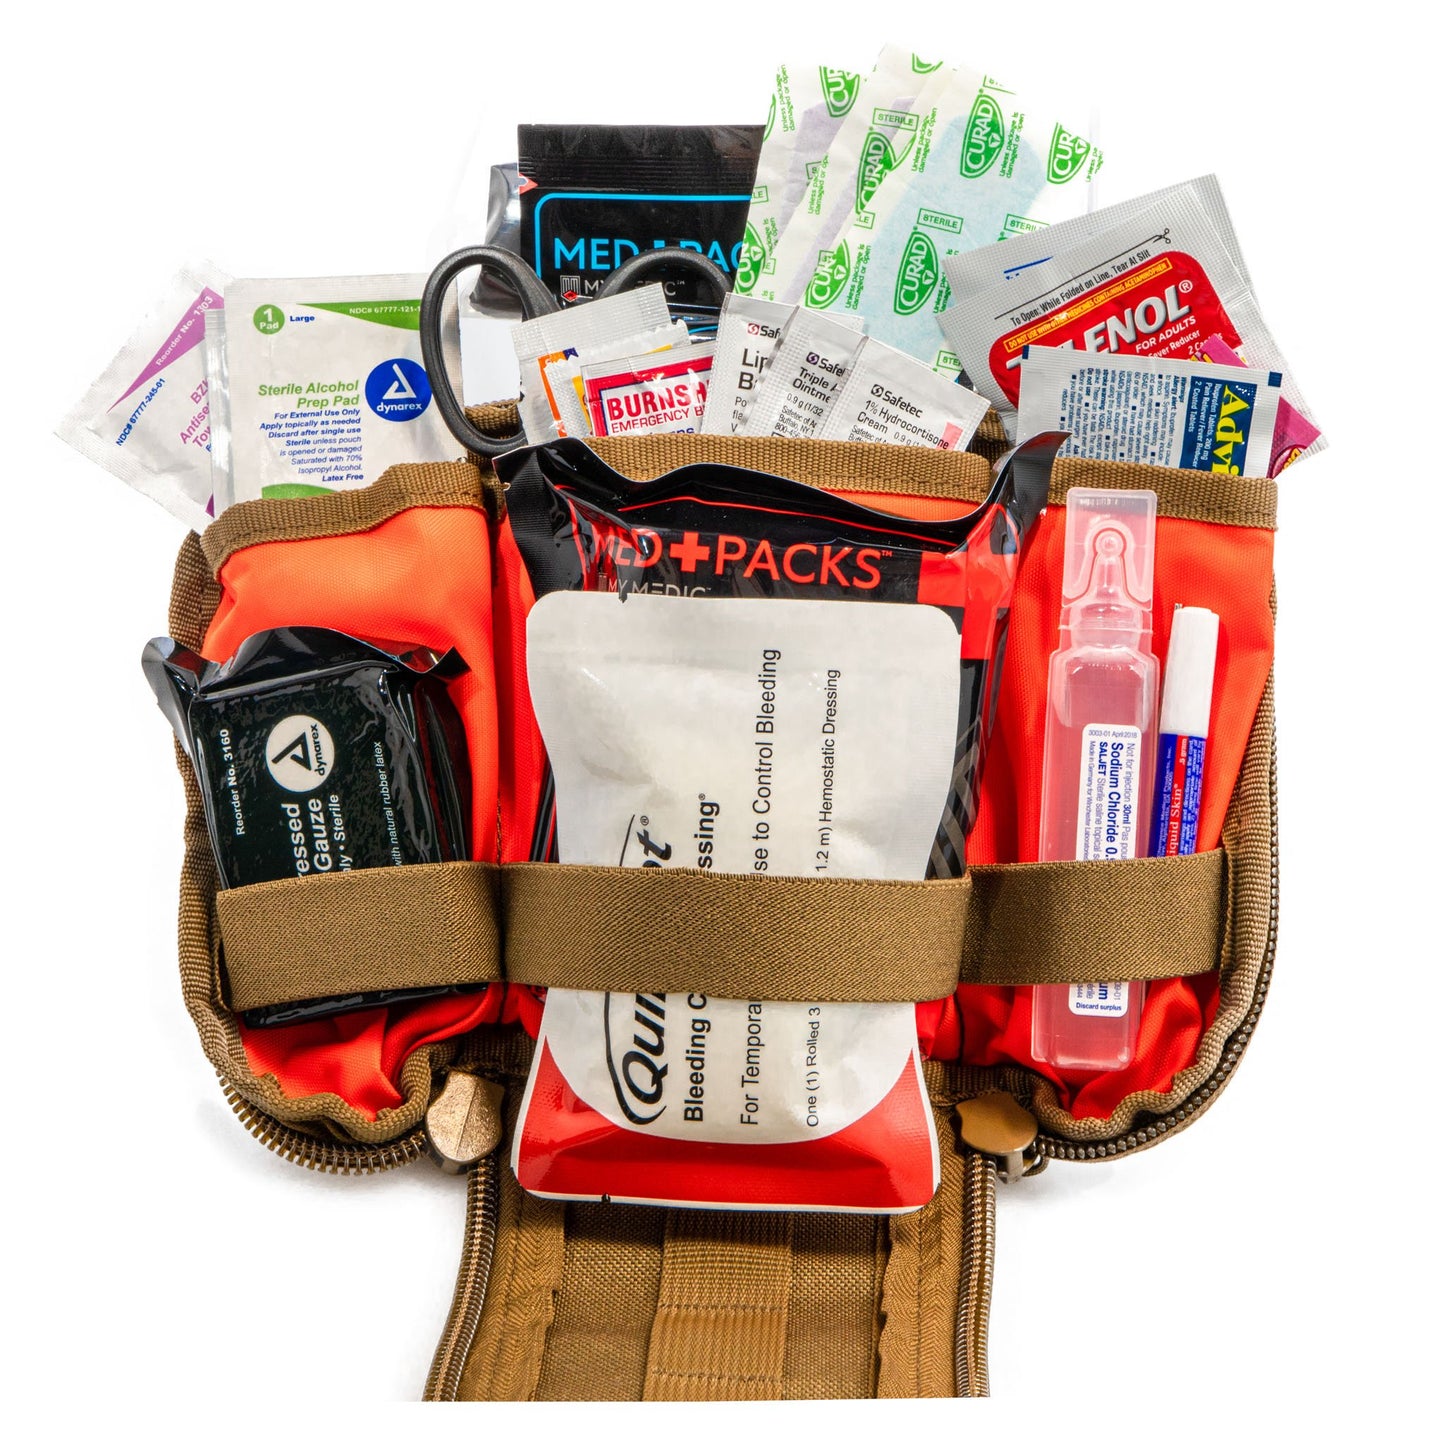 TFAK (Trauma | First Aid Kit)